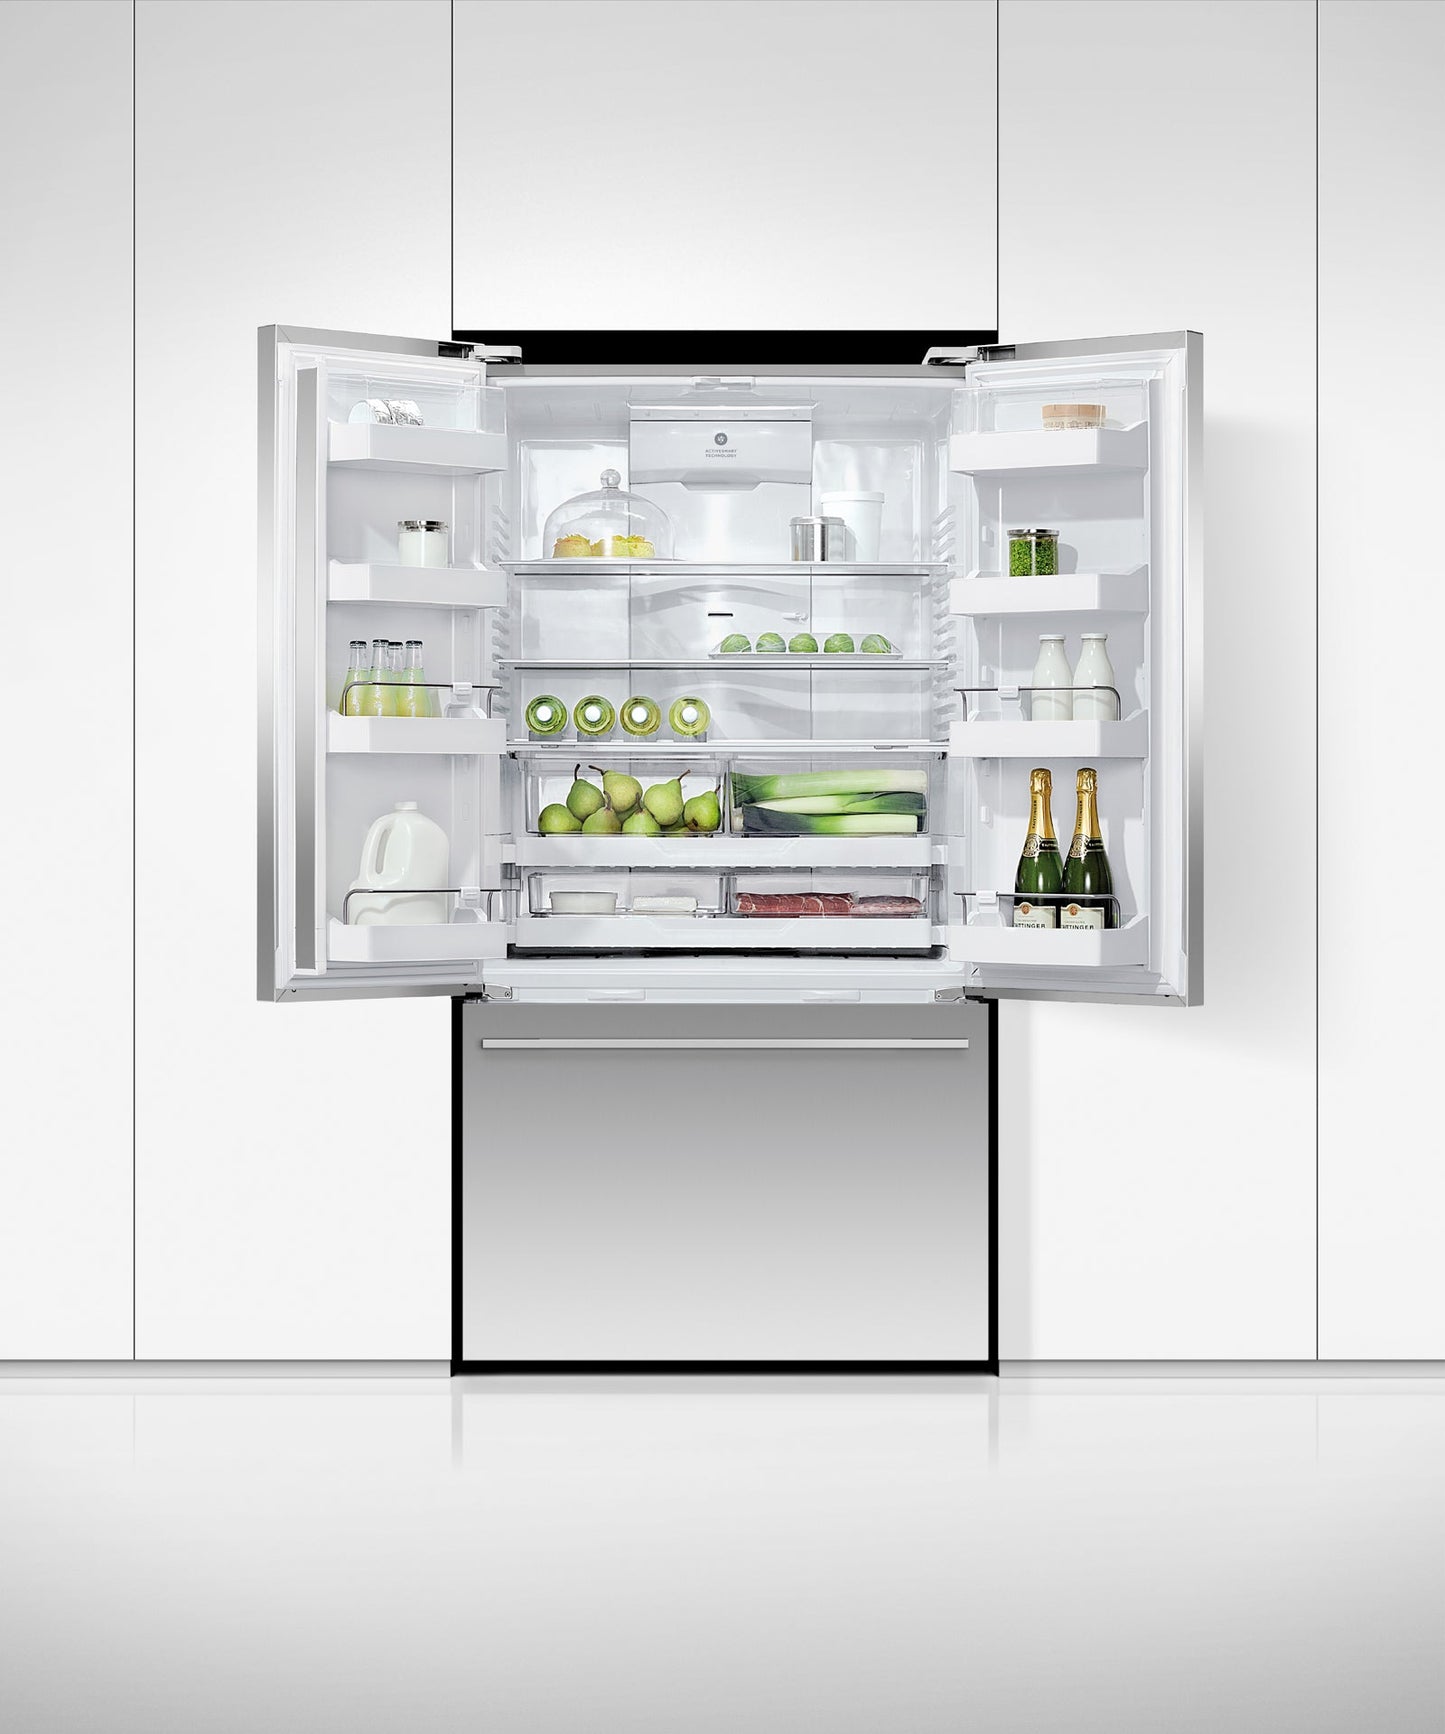 Freestanding French Door Refrigerator Freezer, 36", 20.1 cu ft, Ice & Water, pdp